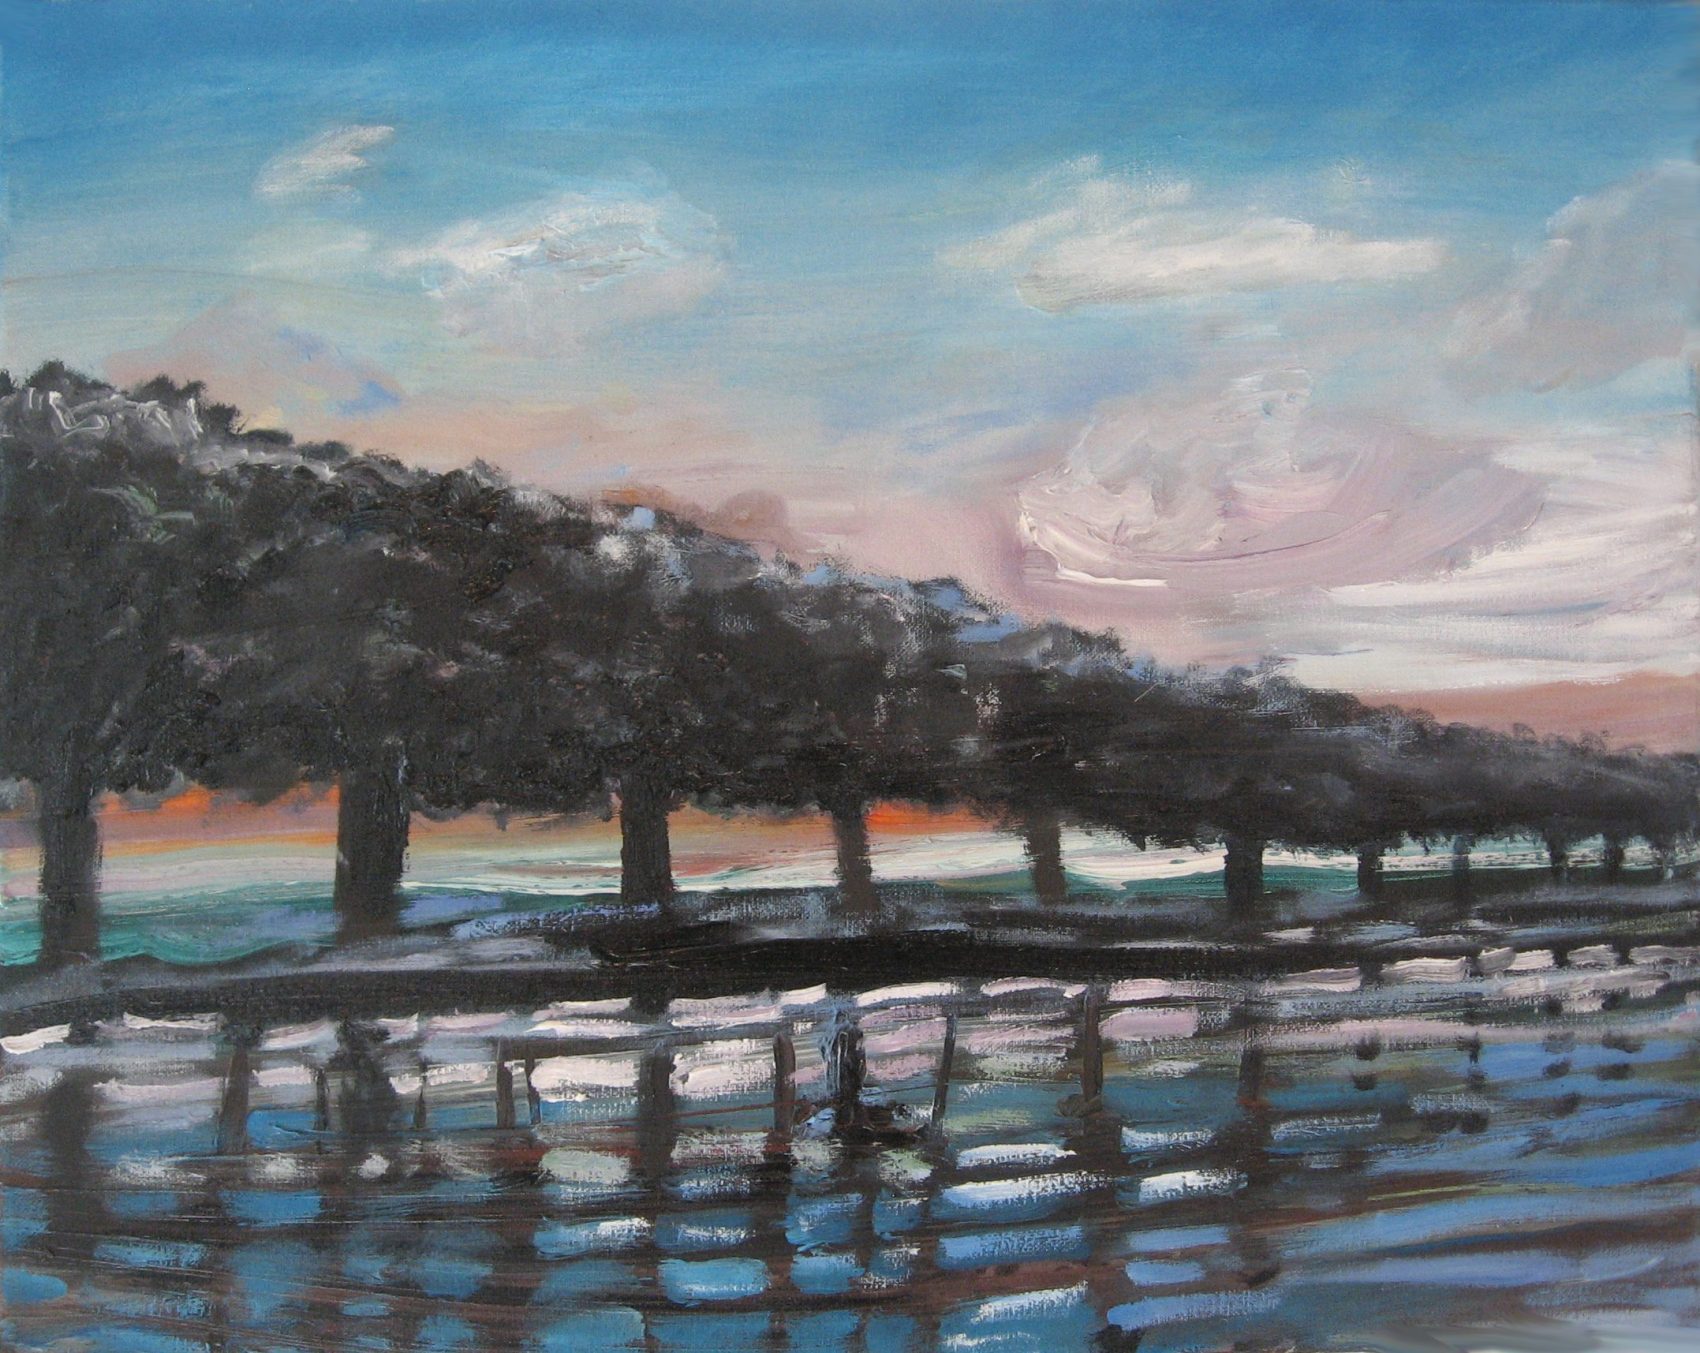 john-graham-dusk-river-dream-painting-modern-landscape-art